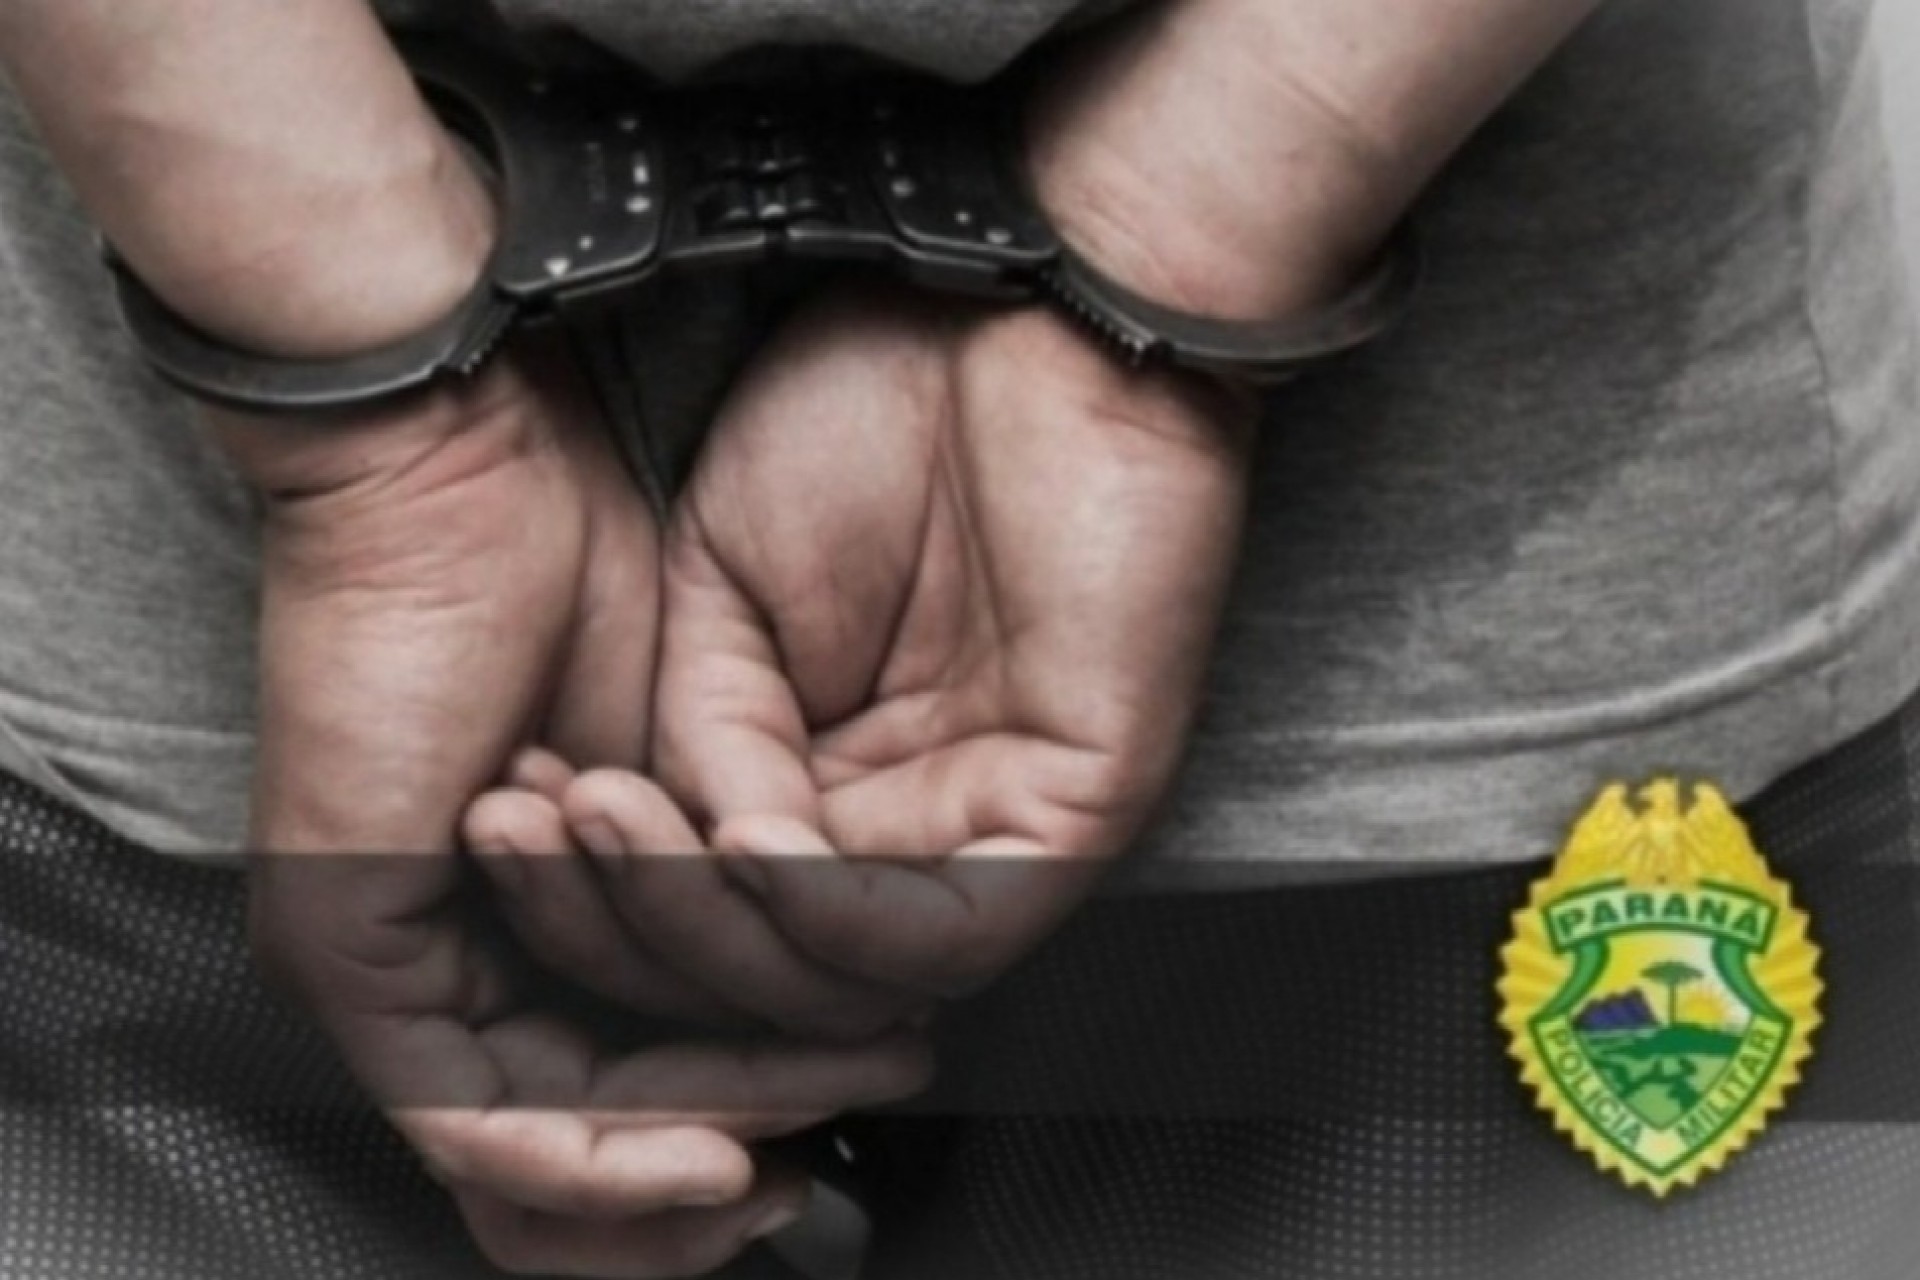 Policia Militar cumpre três mandados de prisão em São Miguel do Iguaçu e Itaipulândia